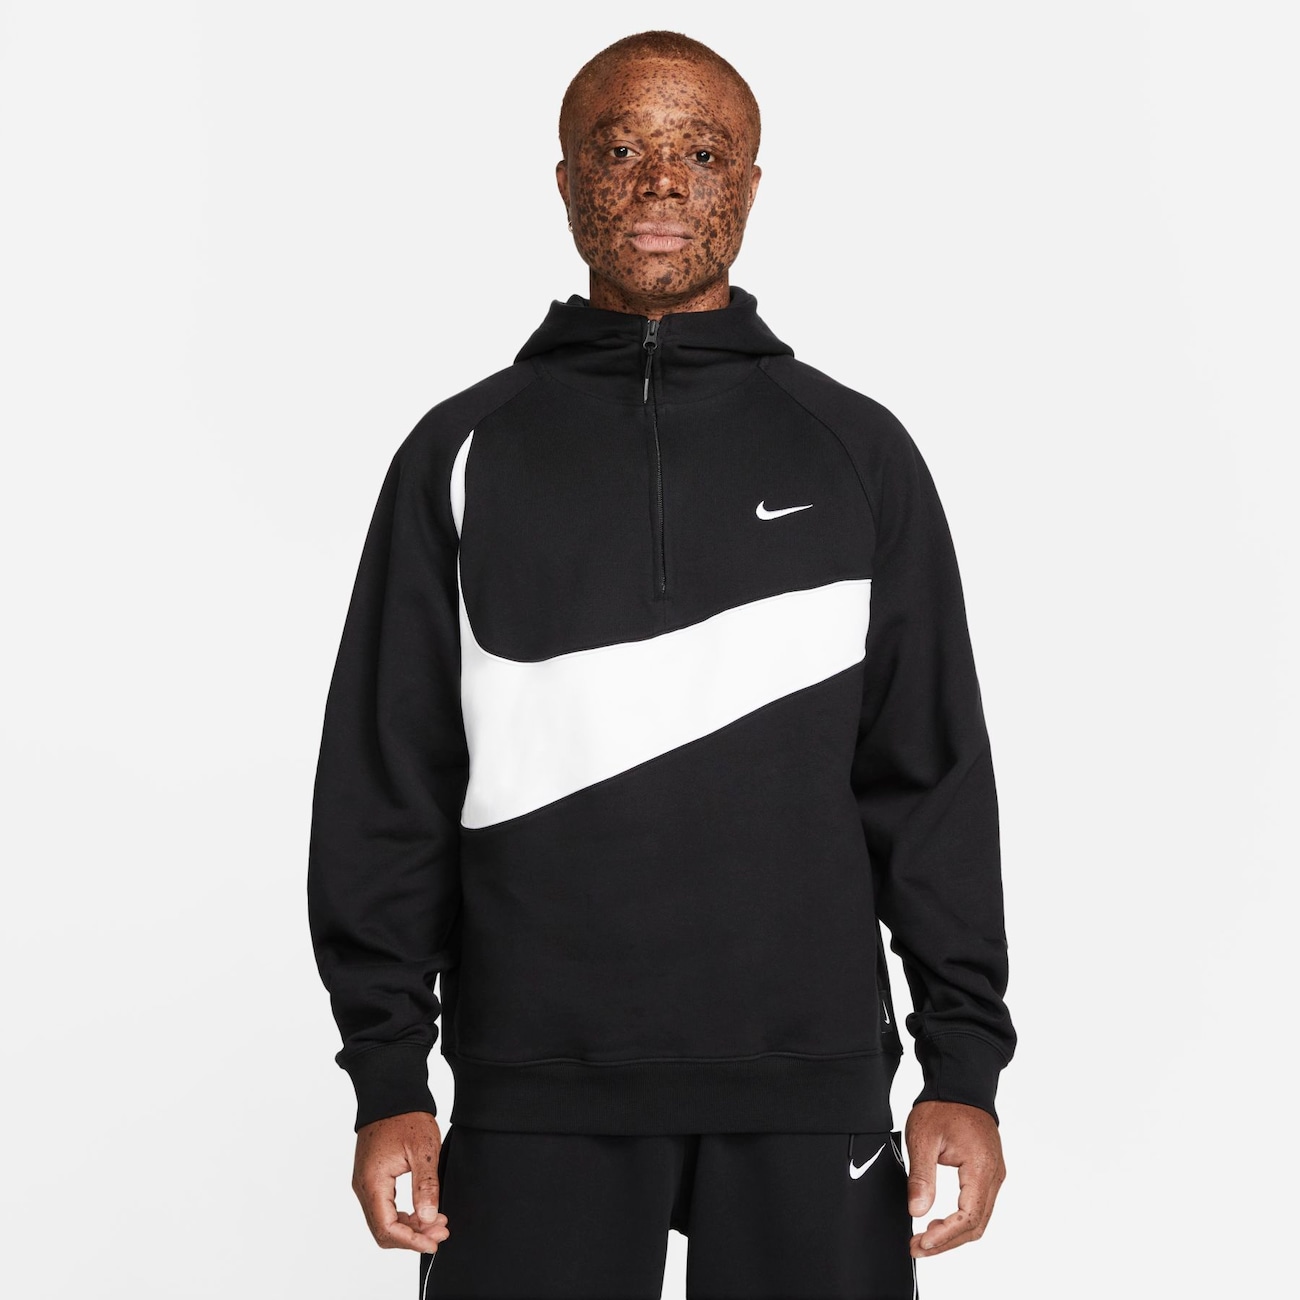 Blusão Nike Swoosh Masculino